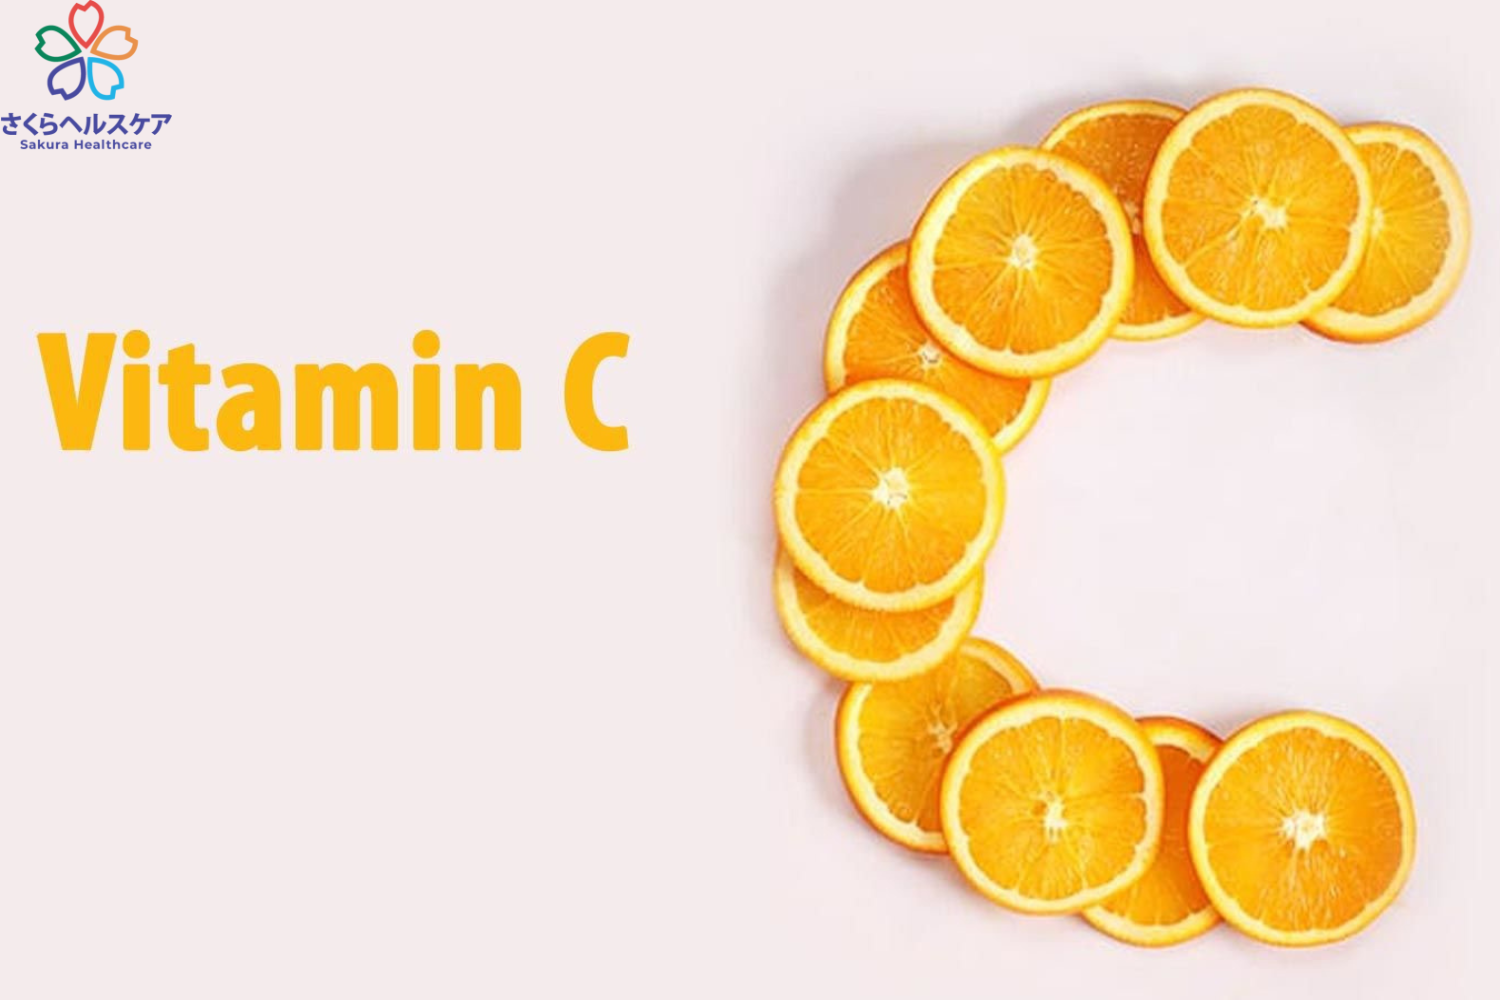 Vitamin C là gì? 